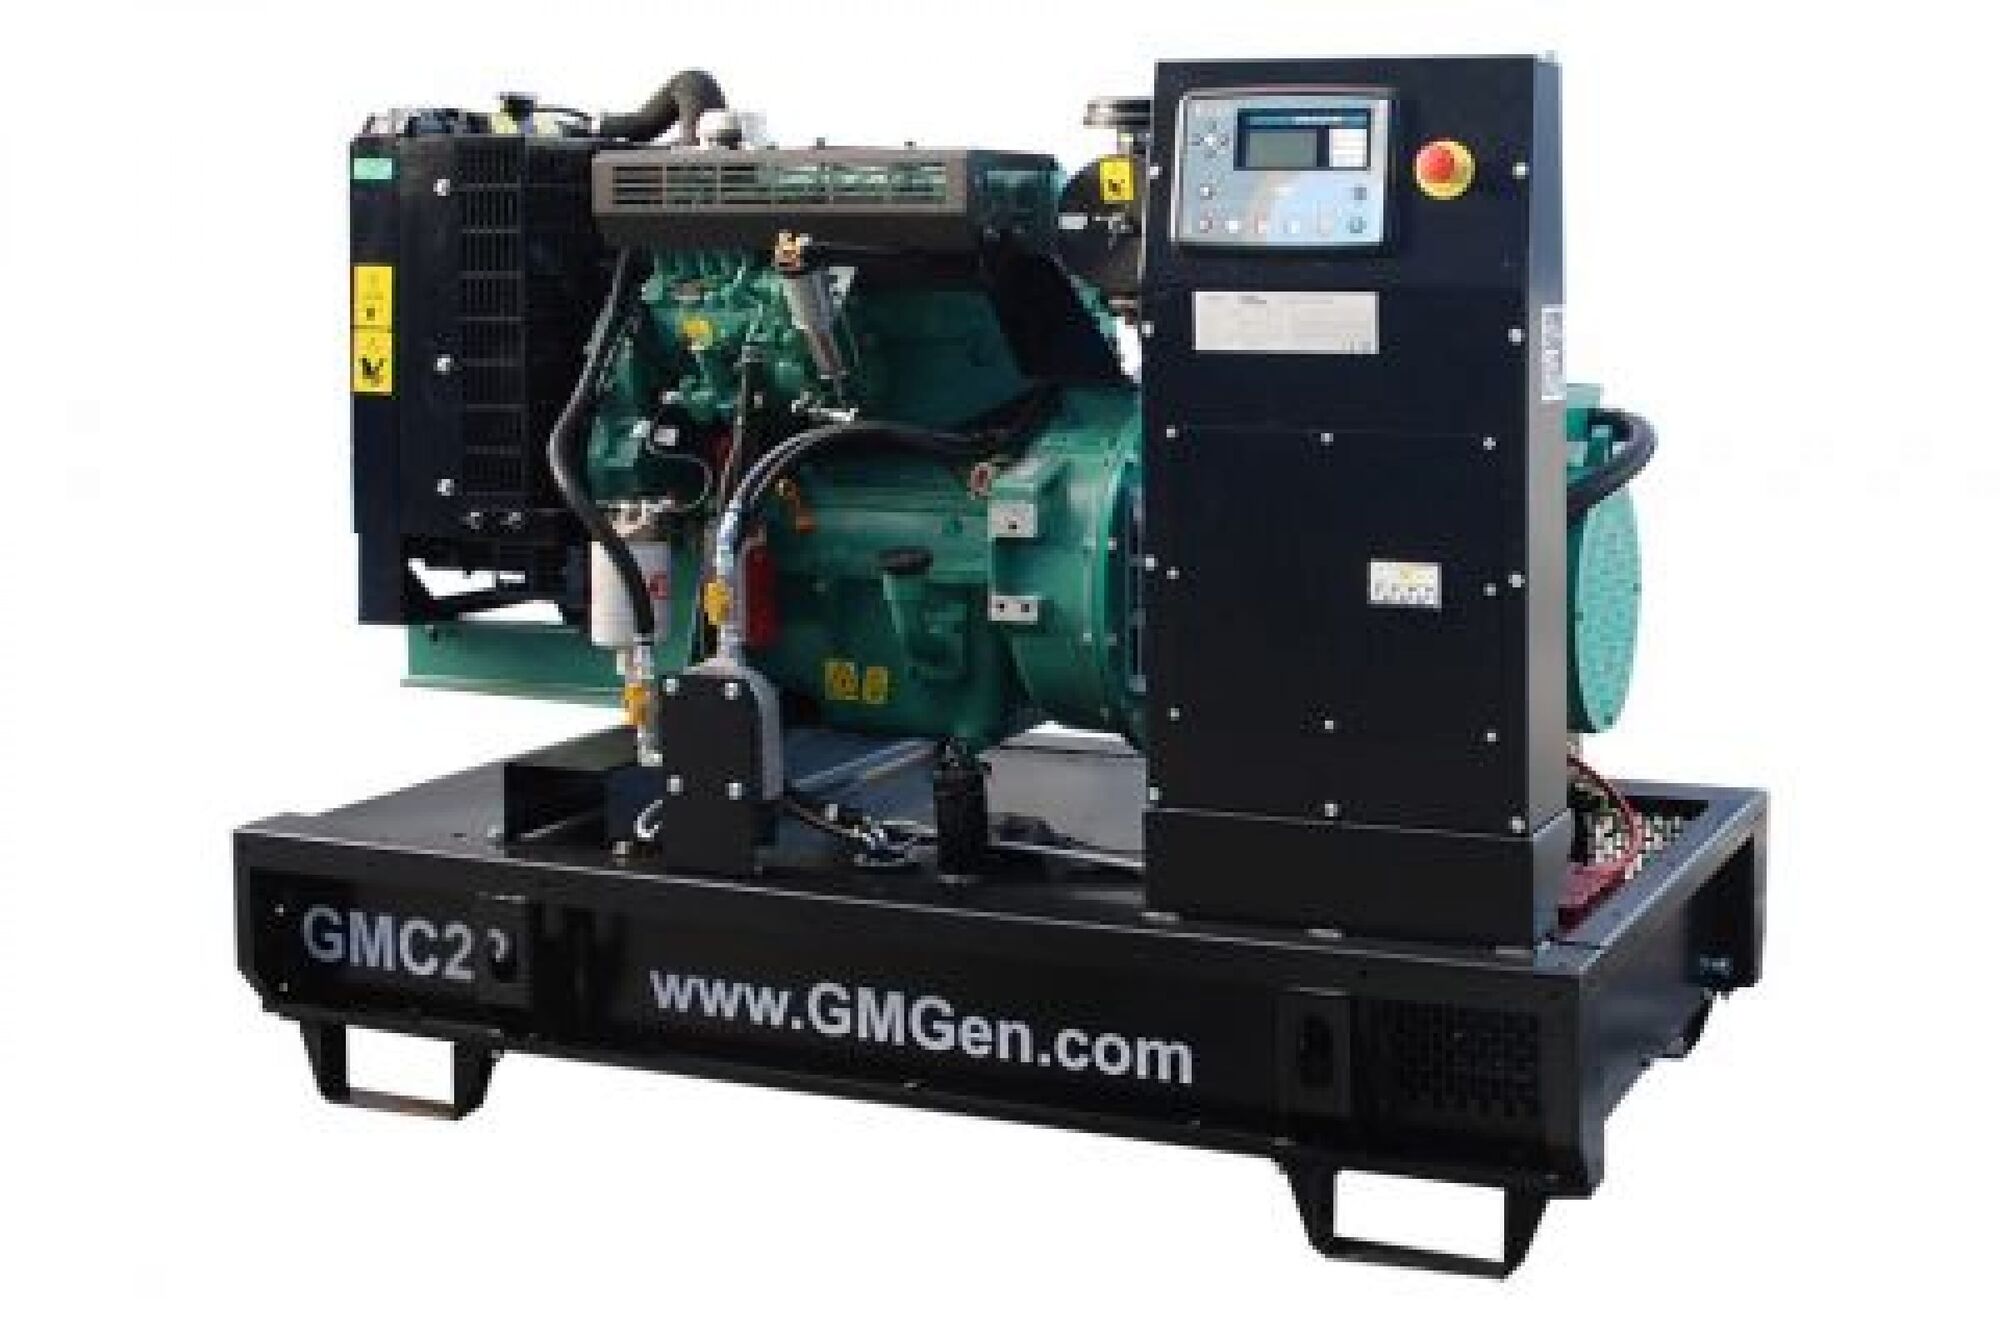 Дизель генератор GMGen Power Systems GMC22 16 кВт, 380/220 В 101109014